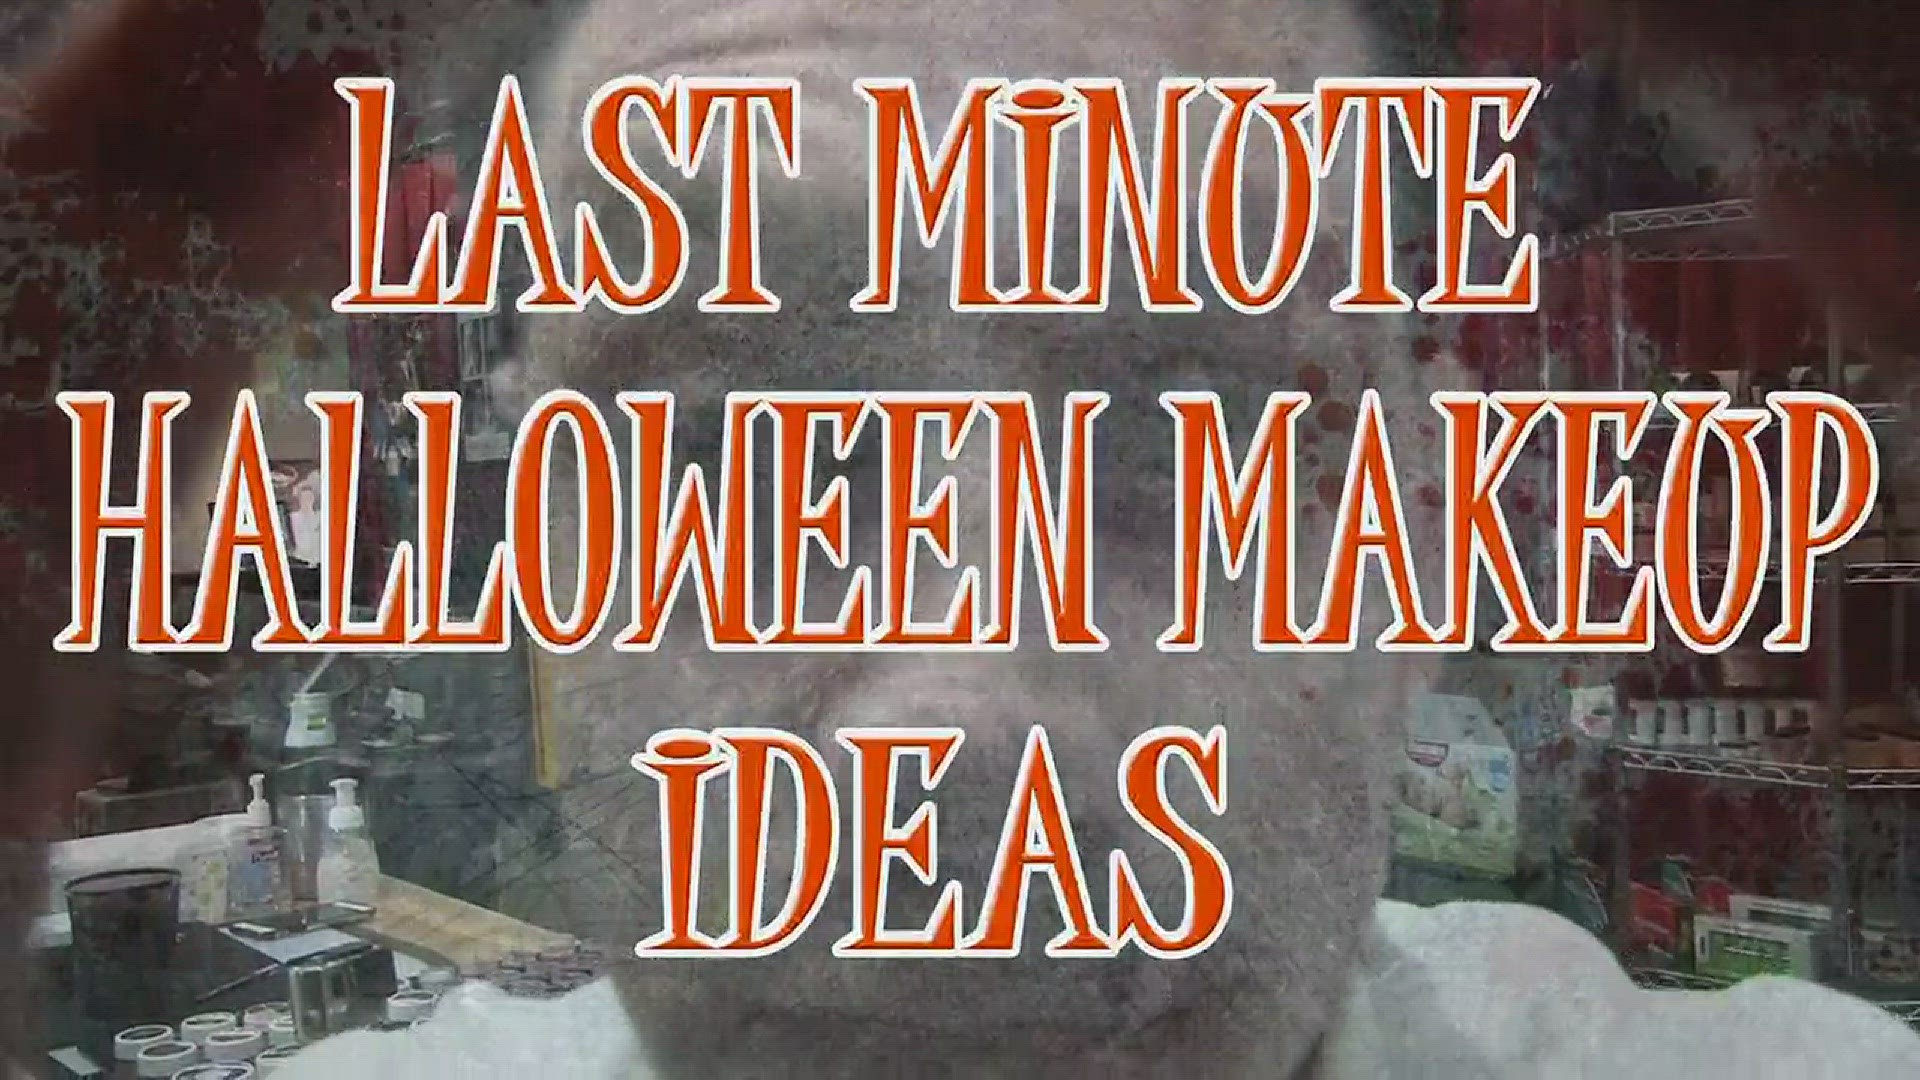 Last minute Halloween costume ideas